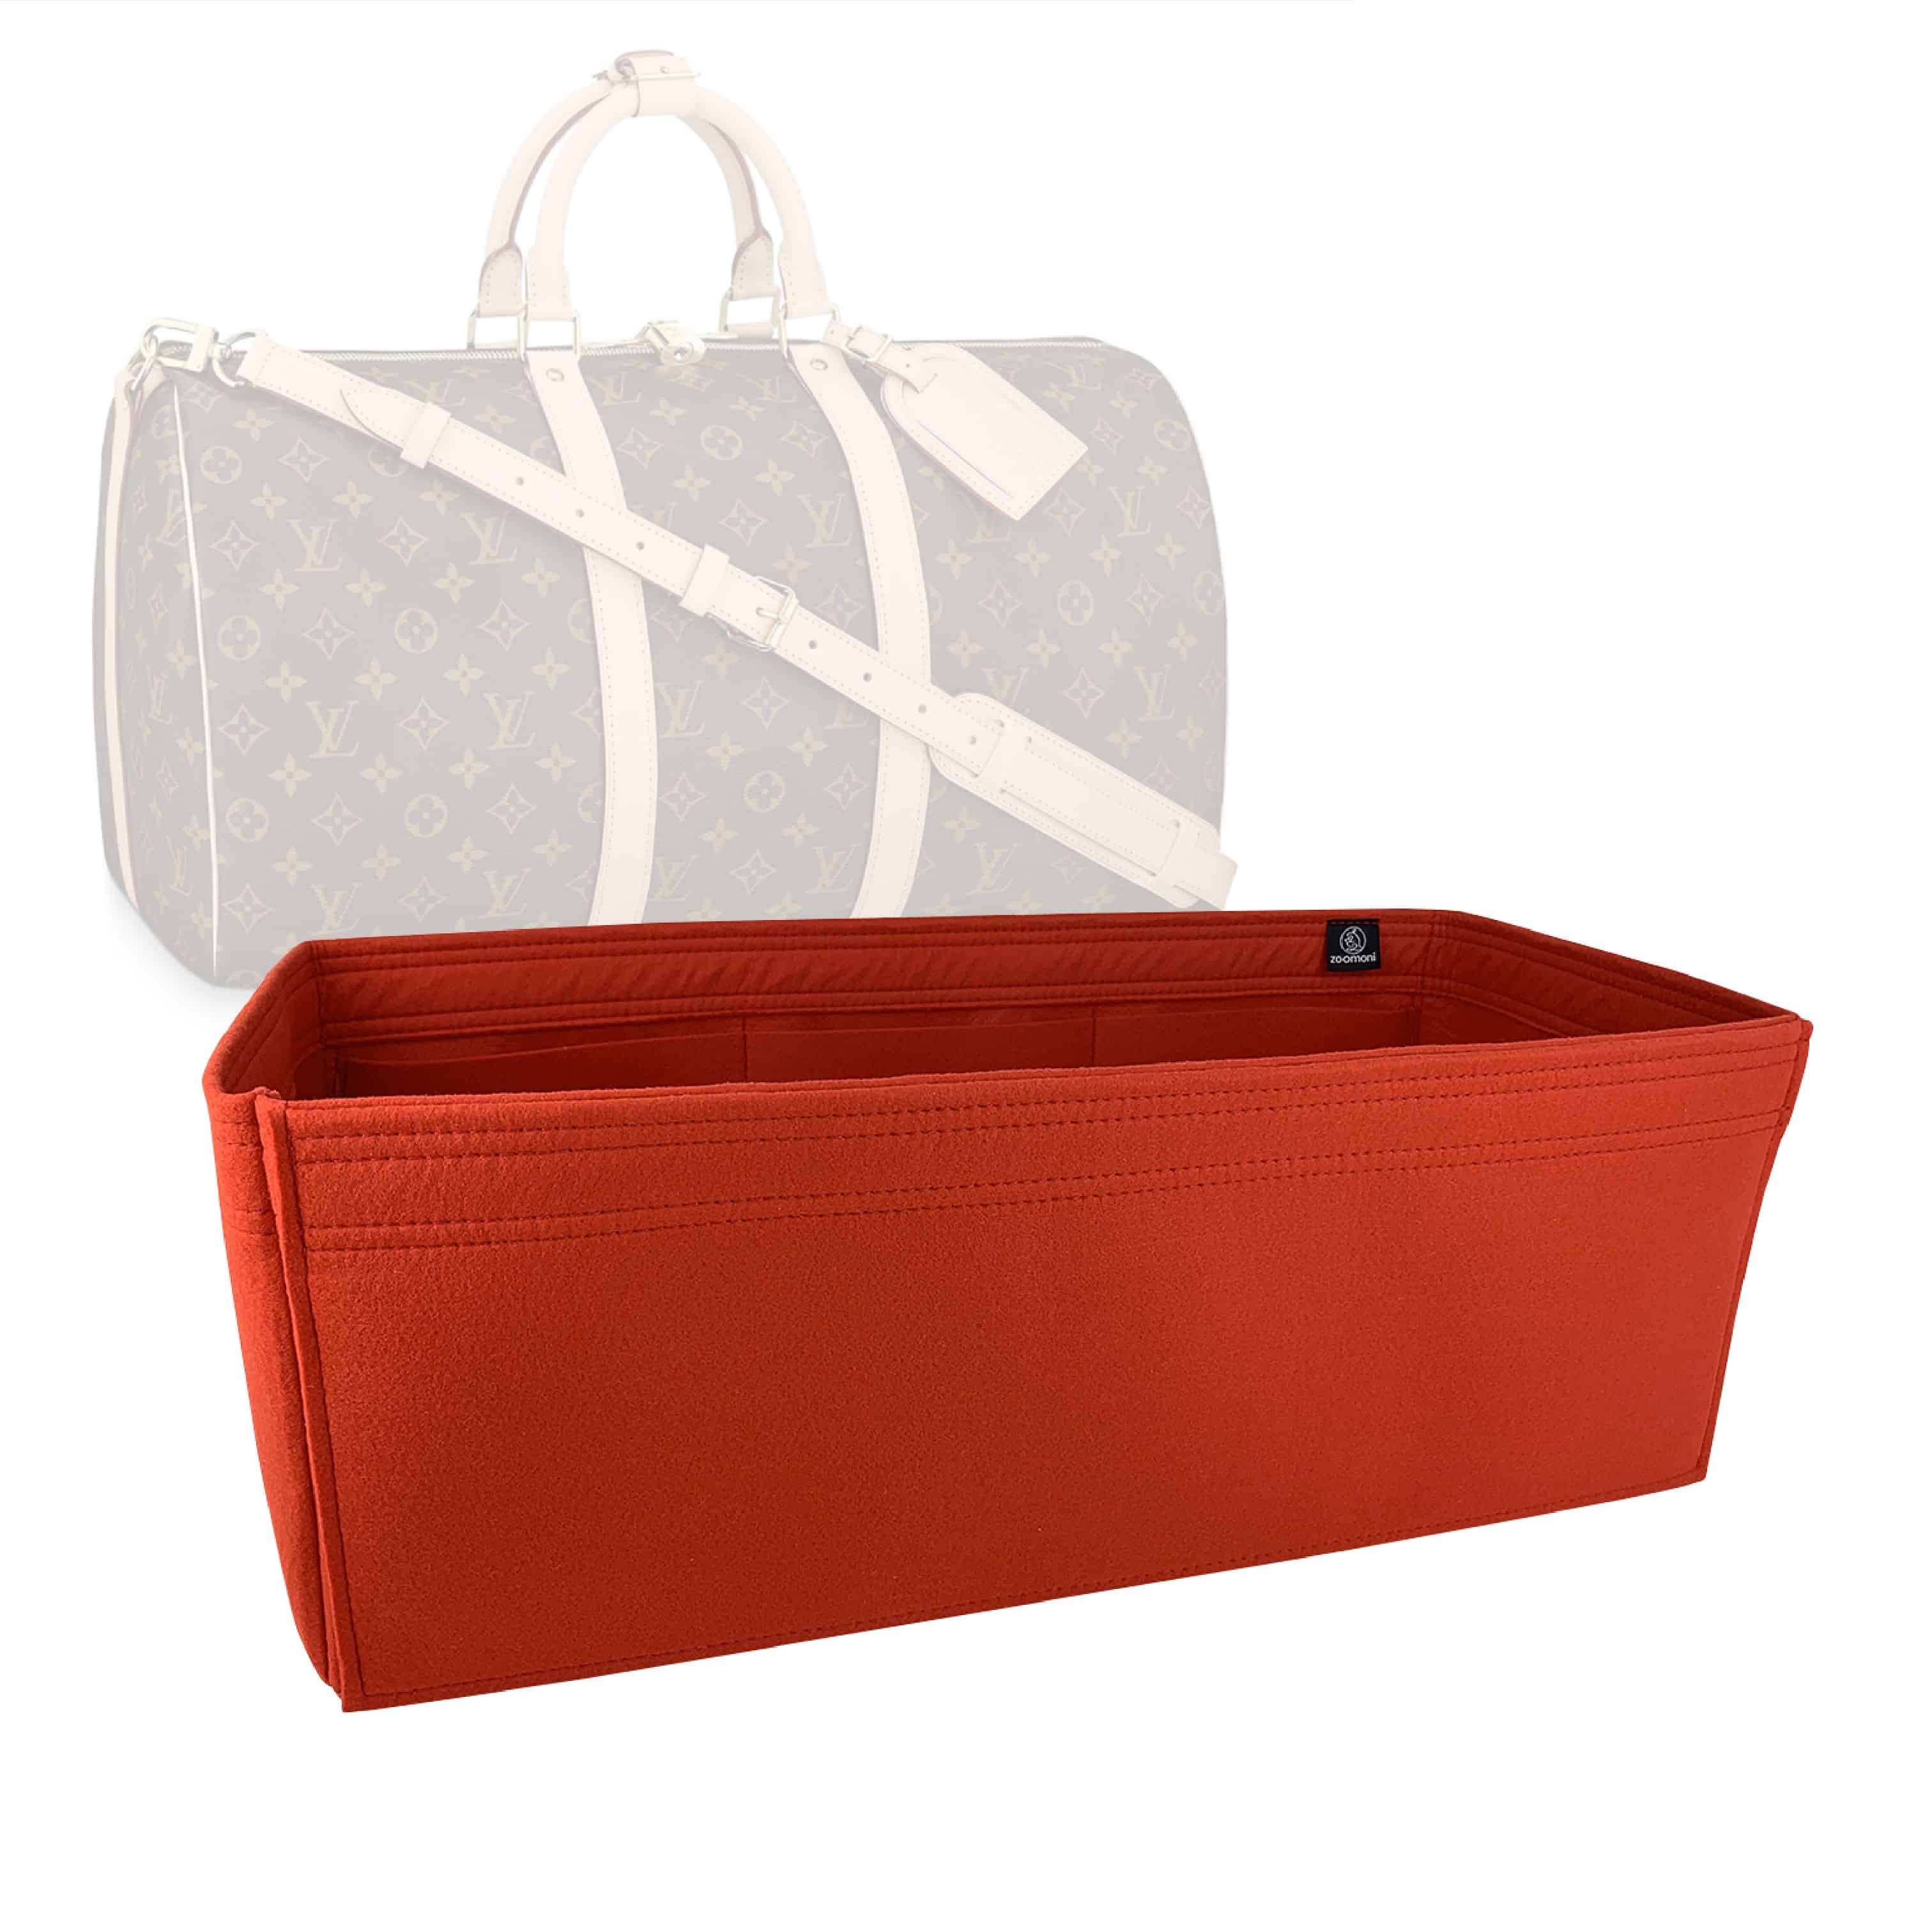 Bag Organizer for Louis Vuitton Speedy 35 (Organizer Type A) - Zoomoni